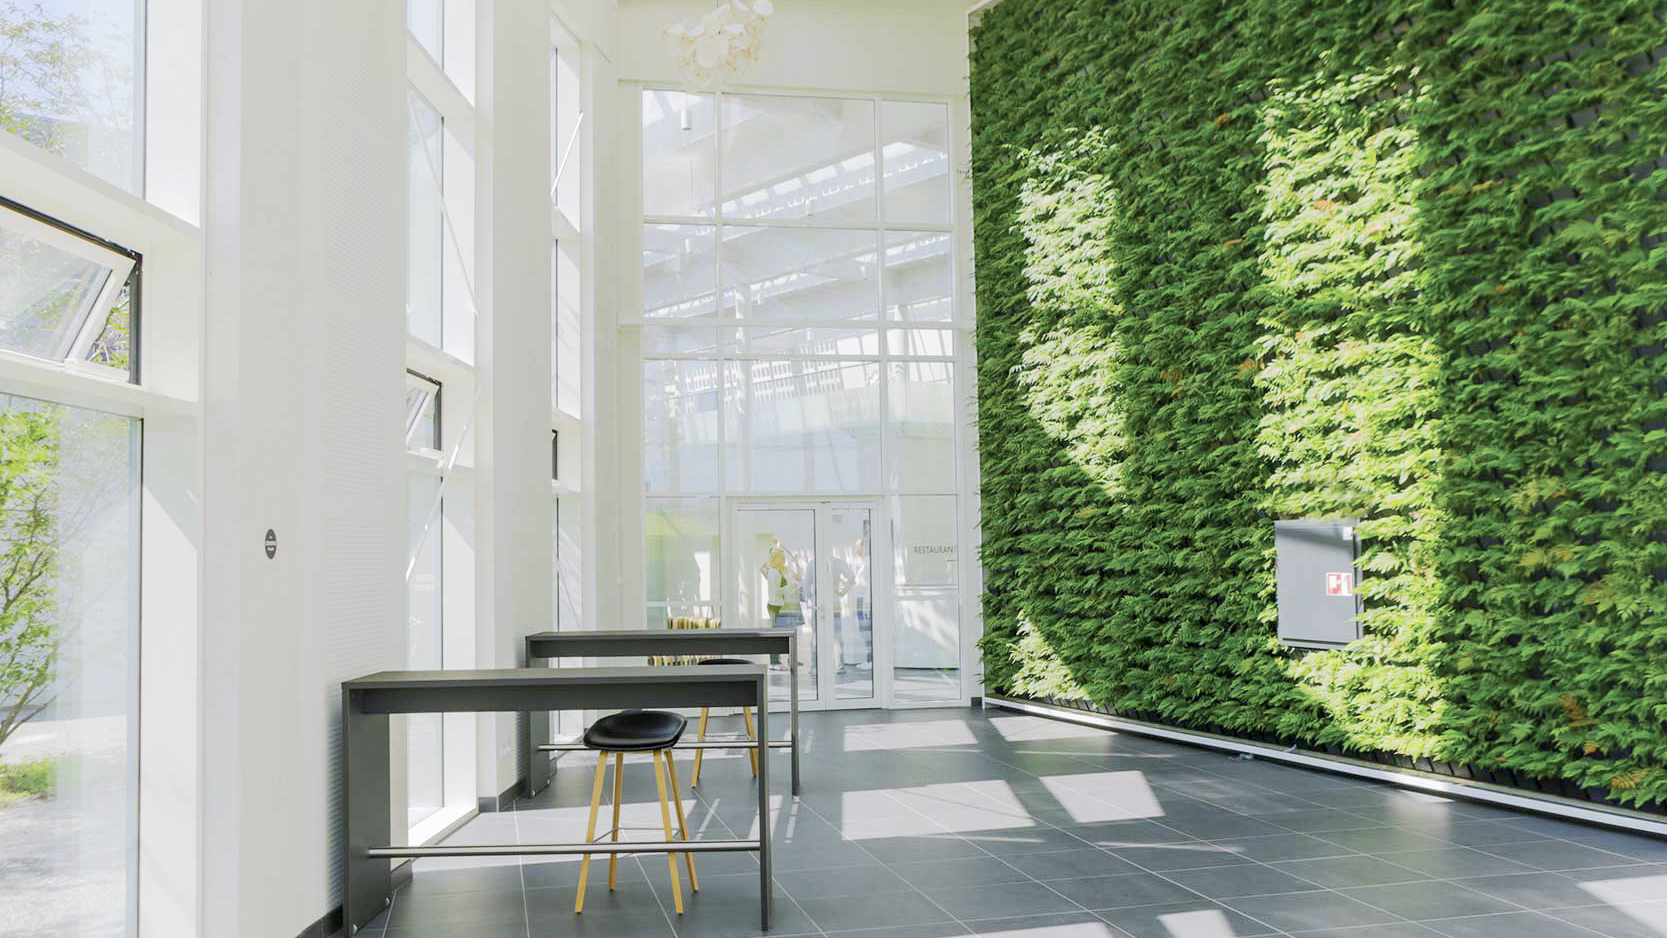 Projekter. Plantevæg installeret i det prisbelønnede og fremsynede grønne byggeri. Byggeriet er fuldendelsen af en ambitiøs idé om et bæredygtigt hotel- og konferencecenter